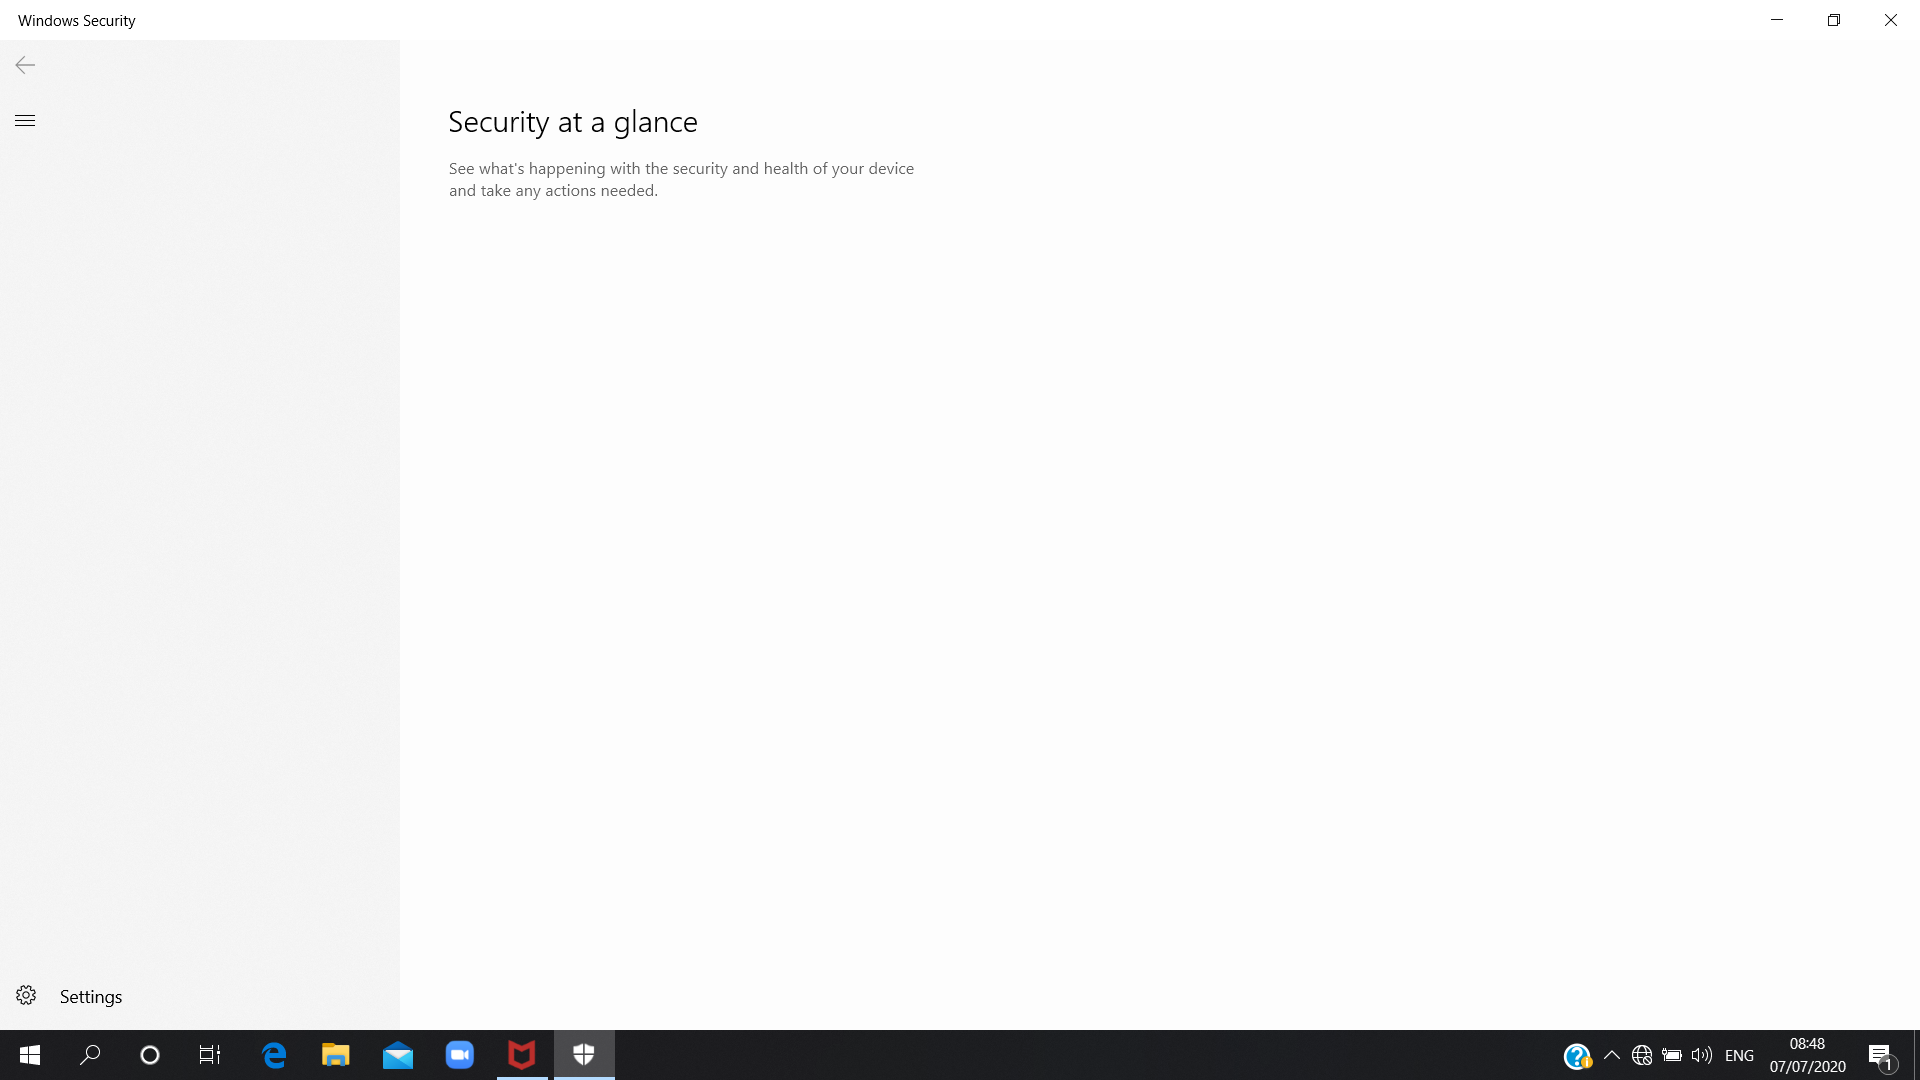 Windows Defender 83e9adc3-a01a-4685-960f-0785aab2e9ca?upload=true.png